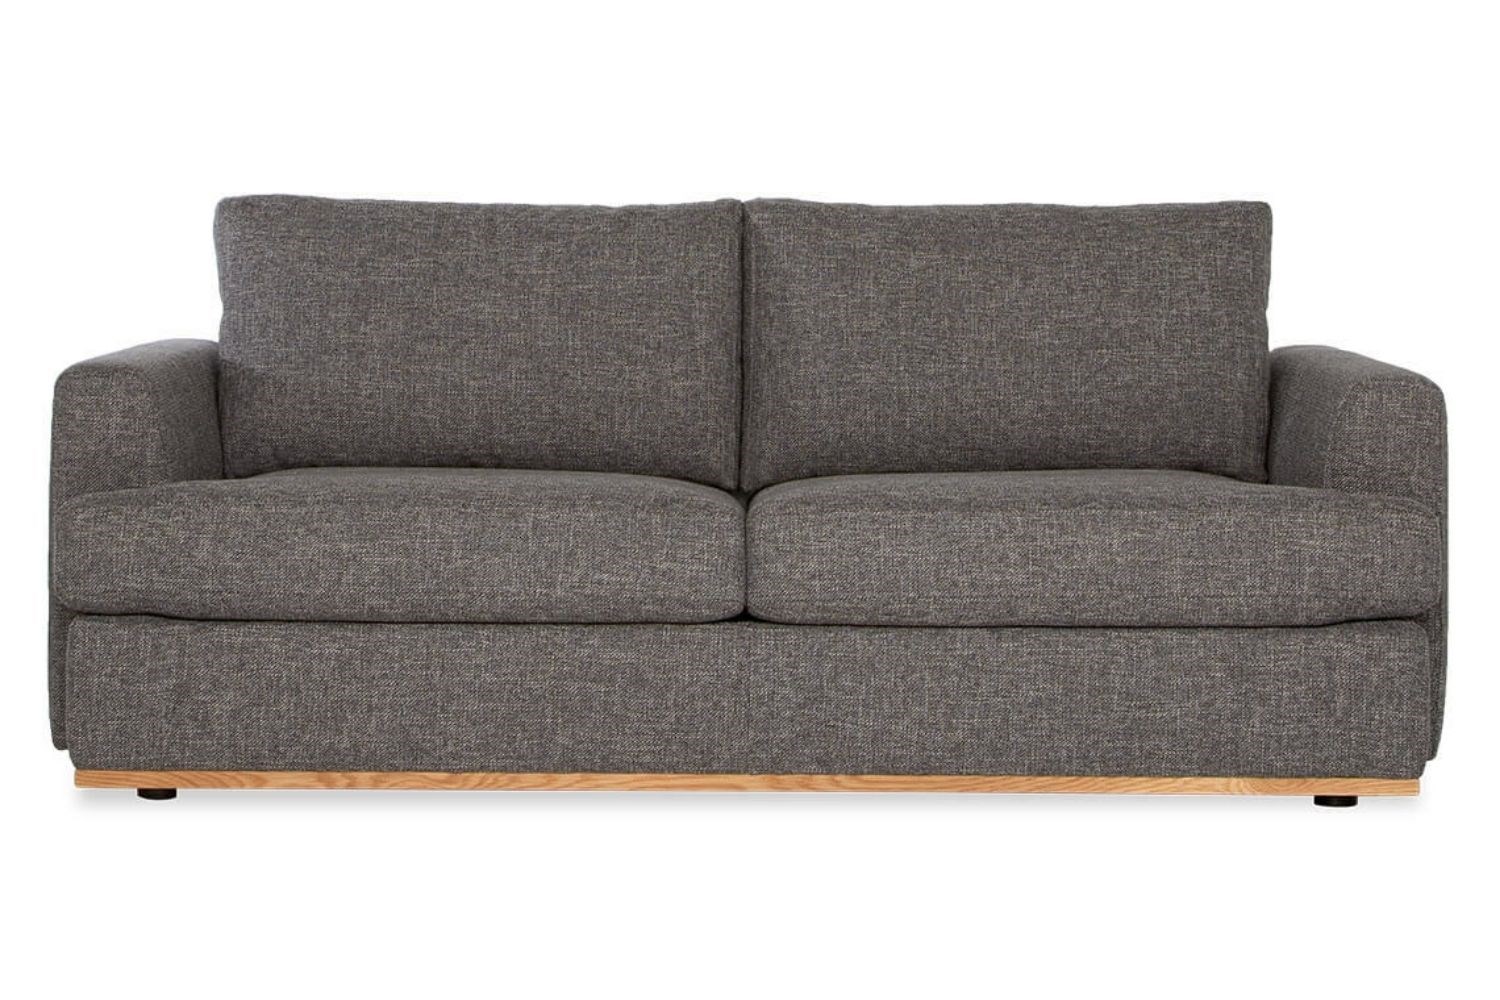 intex sofa bed australia